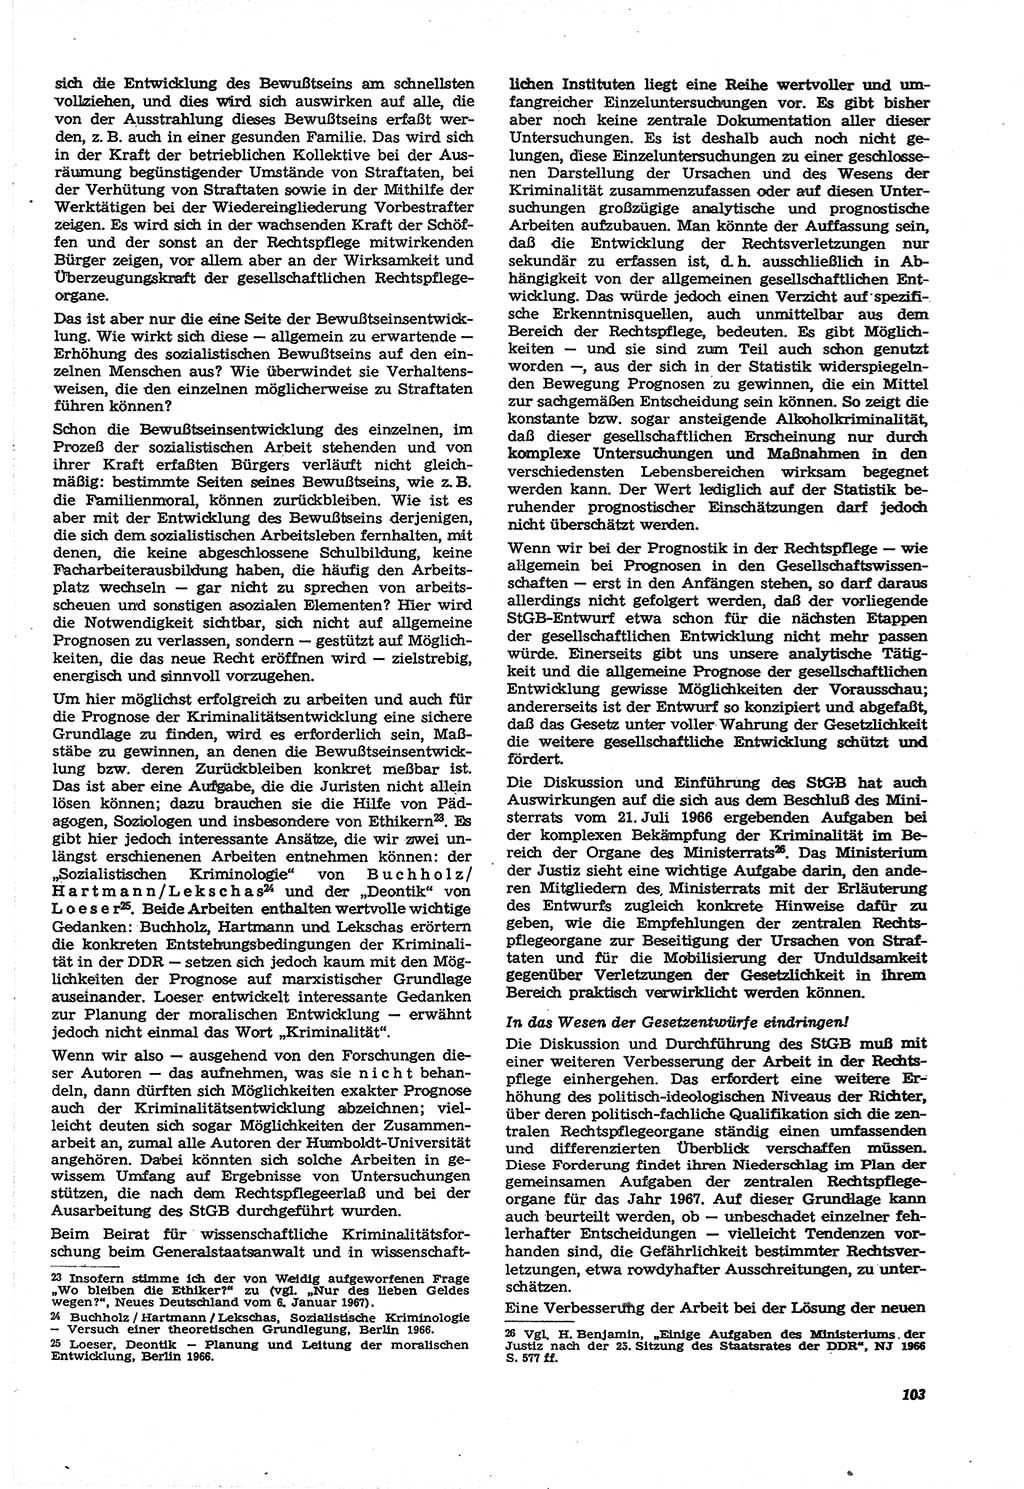 Neue Justiz (NJ), Zeitschrift für Recht und Rechtswissenschaft [Deutsche Demokratische Republik (DDR)], 21. Jahrgang 1967, Seite 103 (NJ DDR 1967, S. 103)